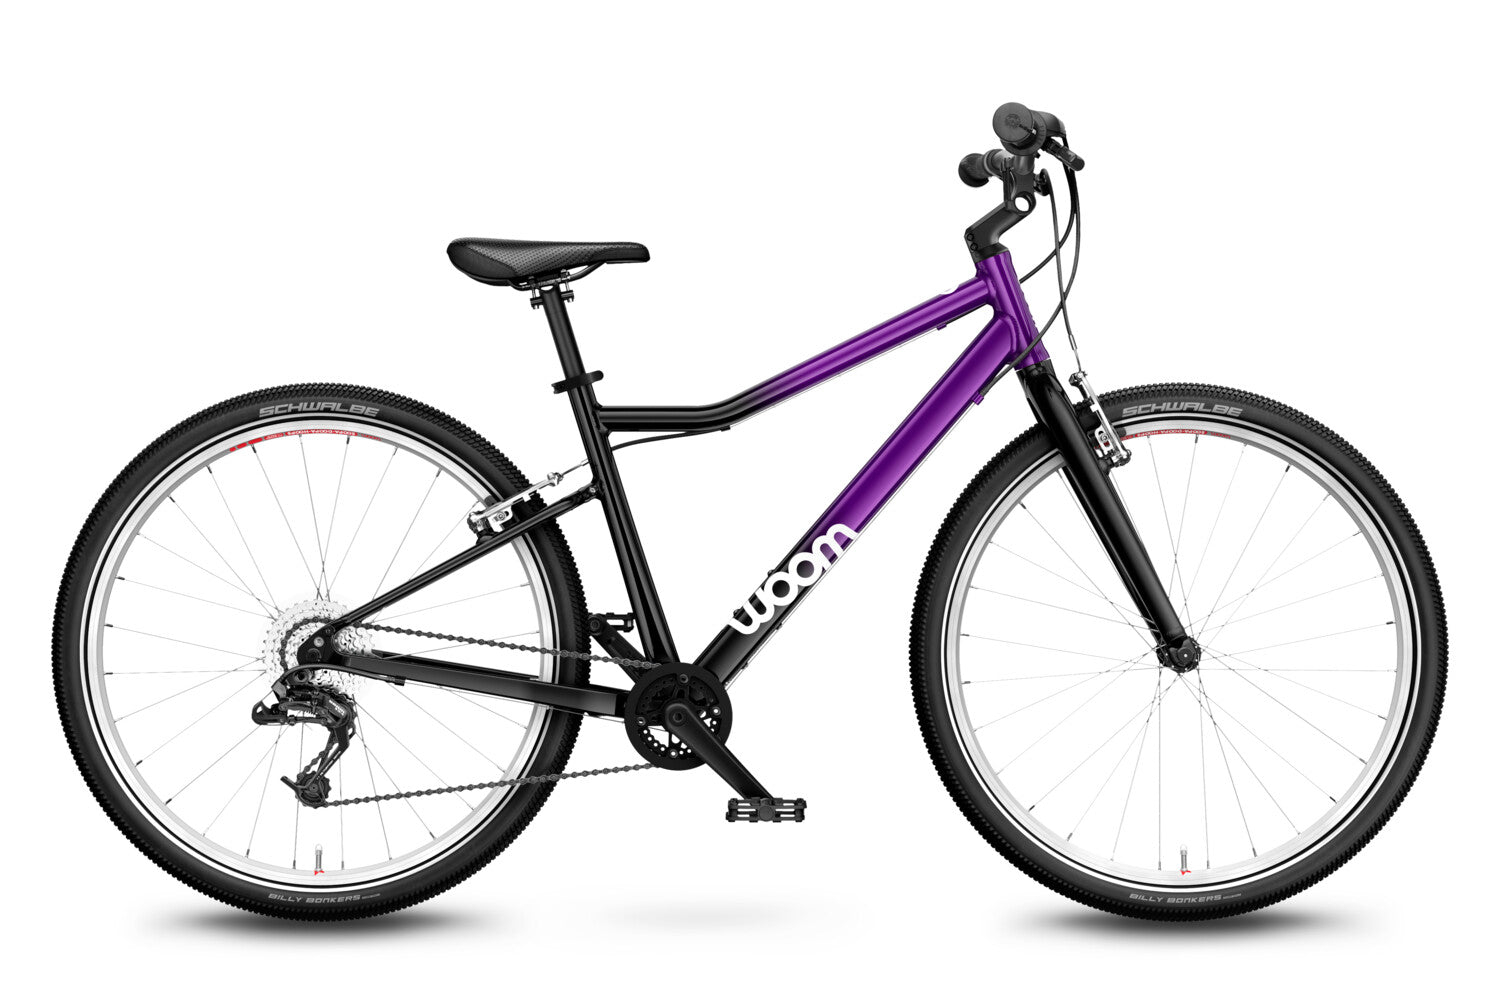 Bicicleta pentru copii Woom 6 Purple Twilight